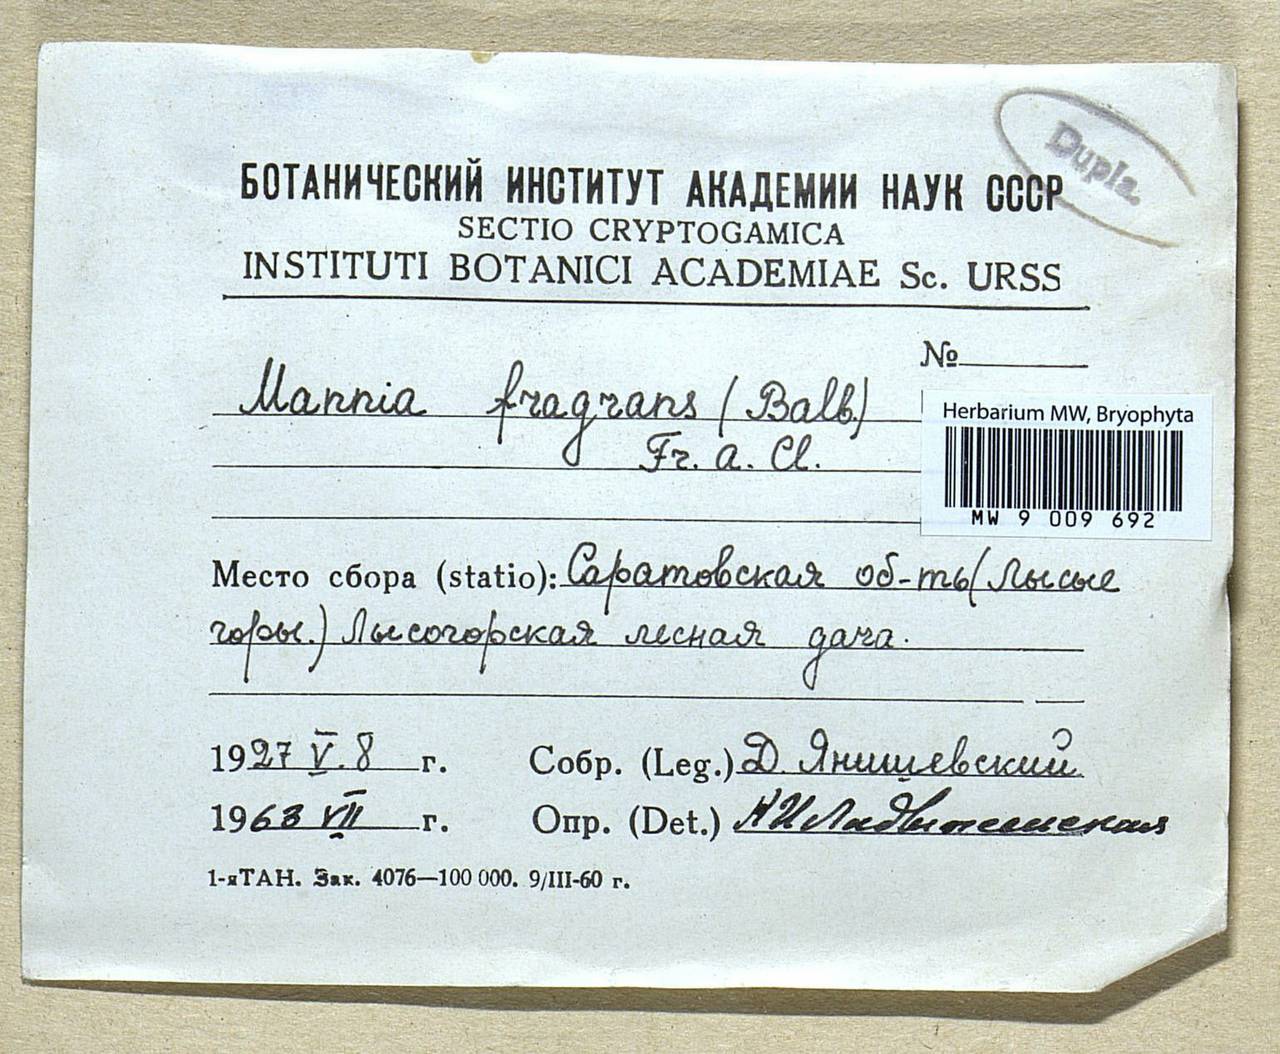 Mannia fragrans (Balb.) Frye & L. Clark, Гербарий мохообразных, Мхи - Среднее Поволжье (B9) (Россия)